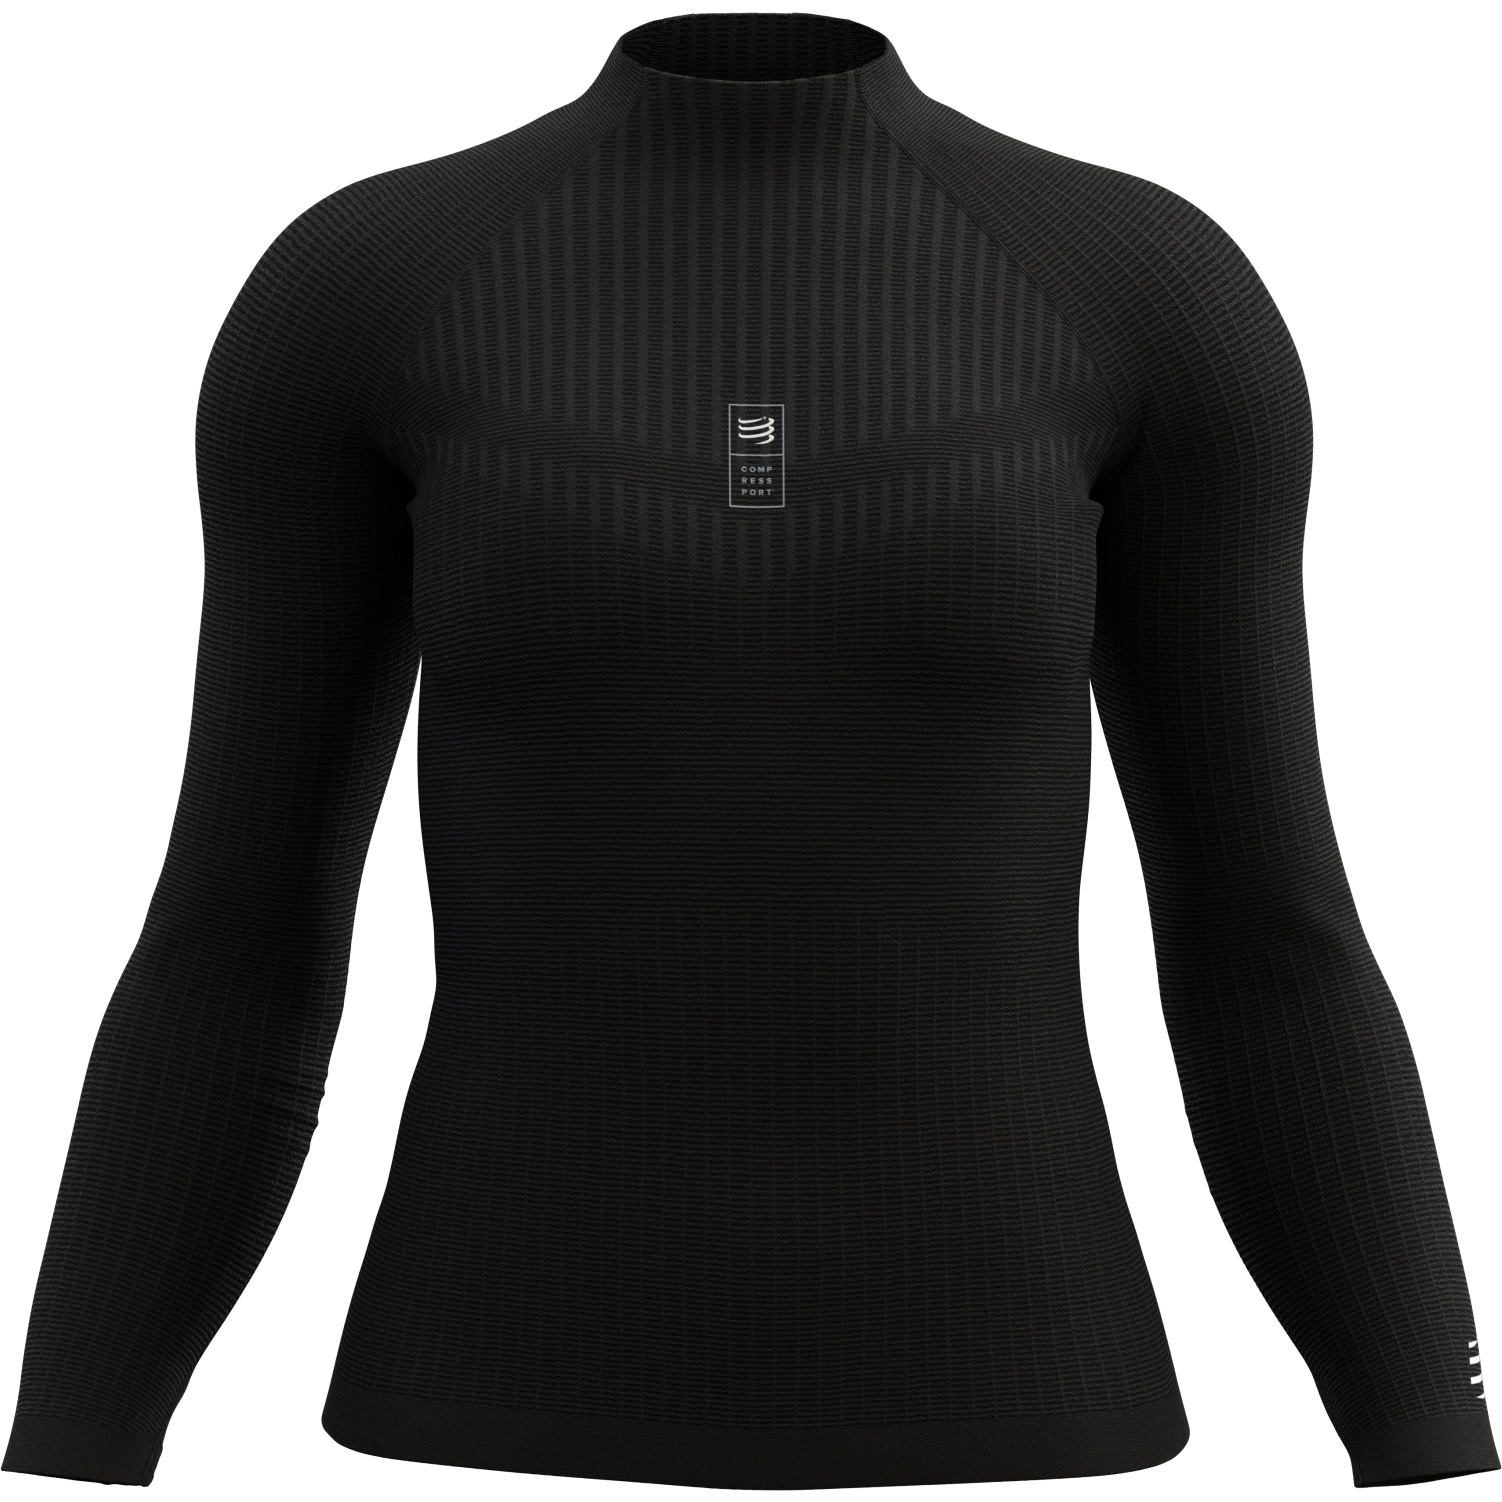 Productfoto van Compressport 3D Thermo 110g Shirt met Lange Mouwen - zwart